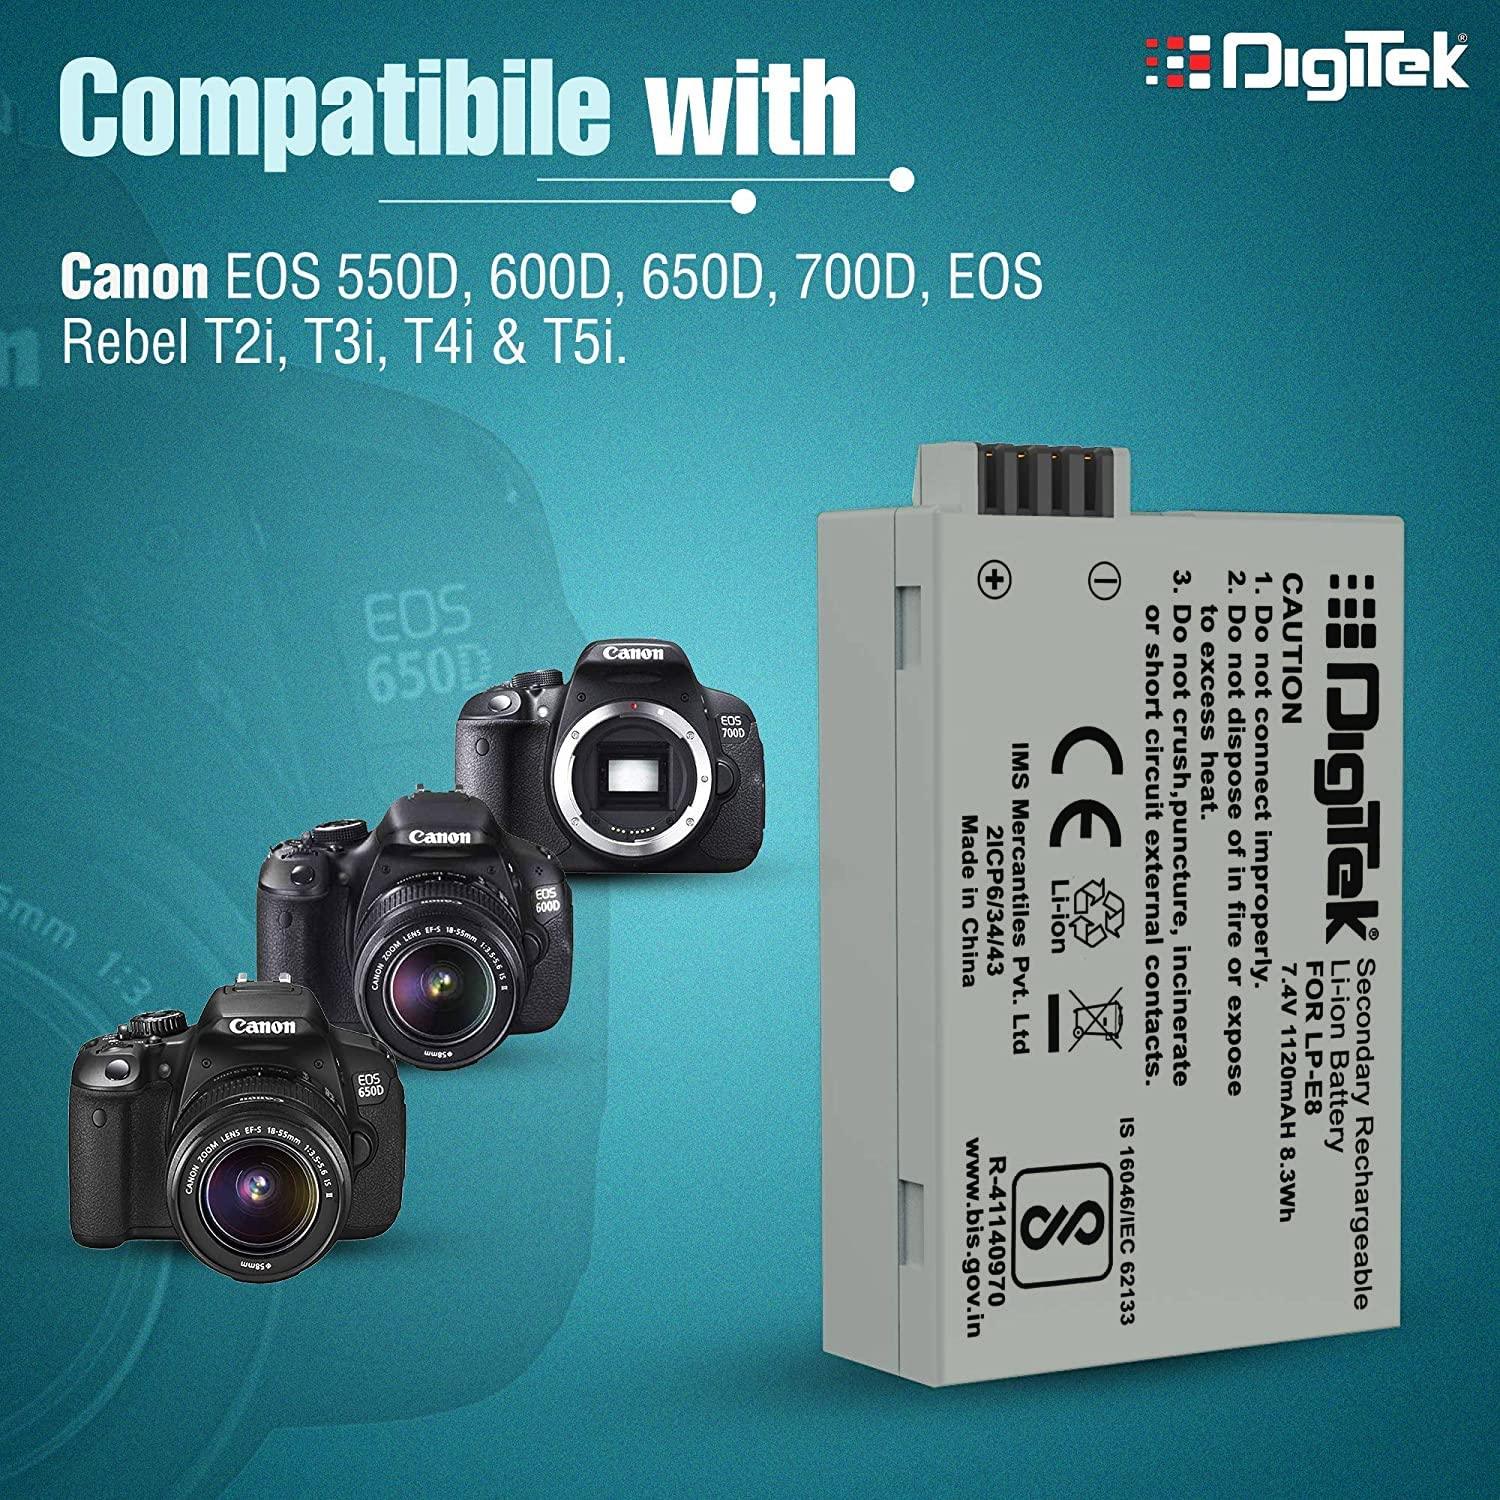 Digitek (LP E8) Lithium-ion Rechargeable Battery for DSLR Camera, Compatibility - Power EOS 55D, 600D, D650, 700D, EOS KISSX4, EOS Rebel T2i, T3i, T4i & T5i - Digitek